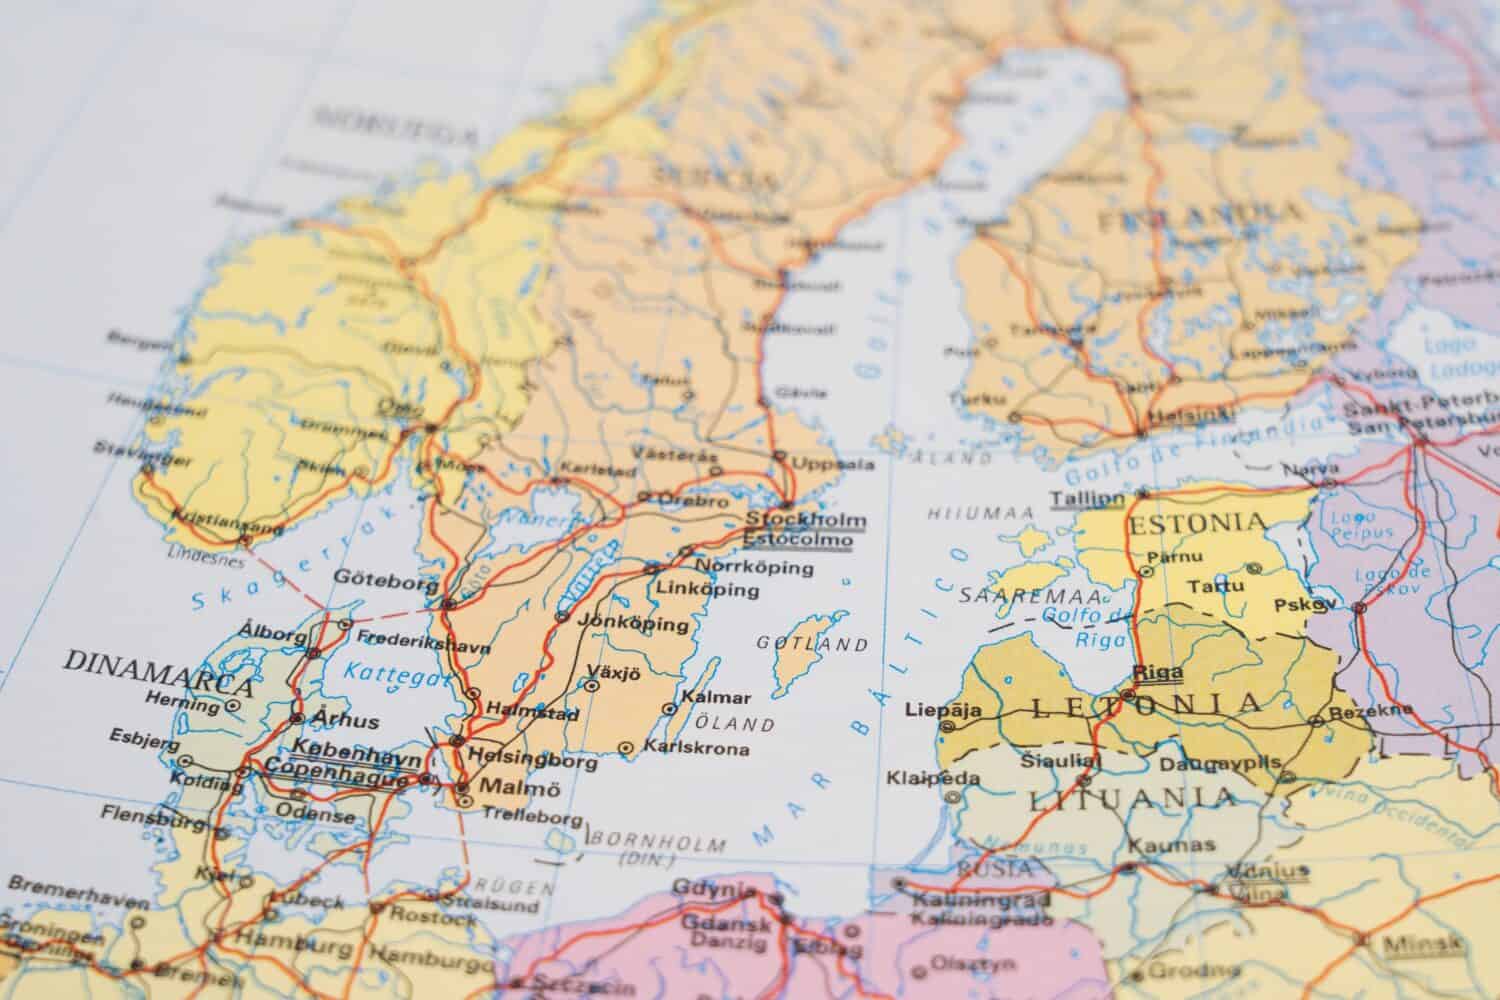 Mappa politica della Lettonia, Estonia, Gotland, Finlandia meridionale, Mar Baltico